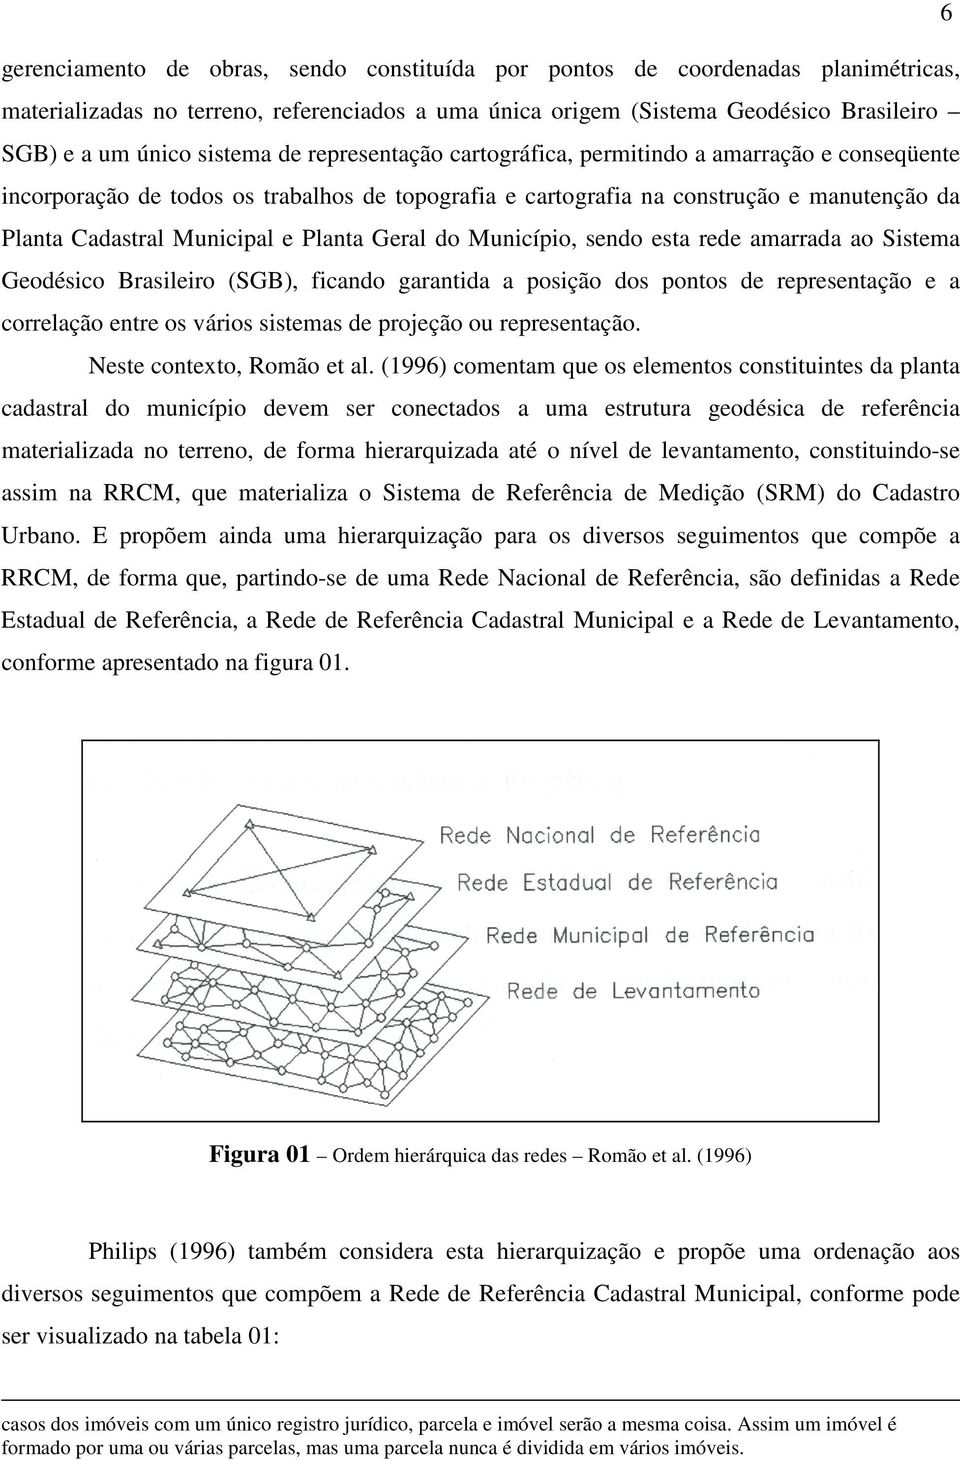 Planta Geral do Município, sendo esta rede amarrada ao Sistema Geodésico Brasileiro (SGB), ficando garantida a posição dos pontos de representação e a correlação entre os vários sistemas de projeção